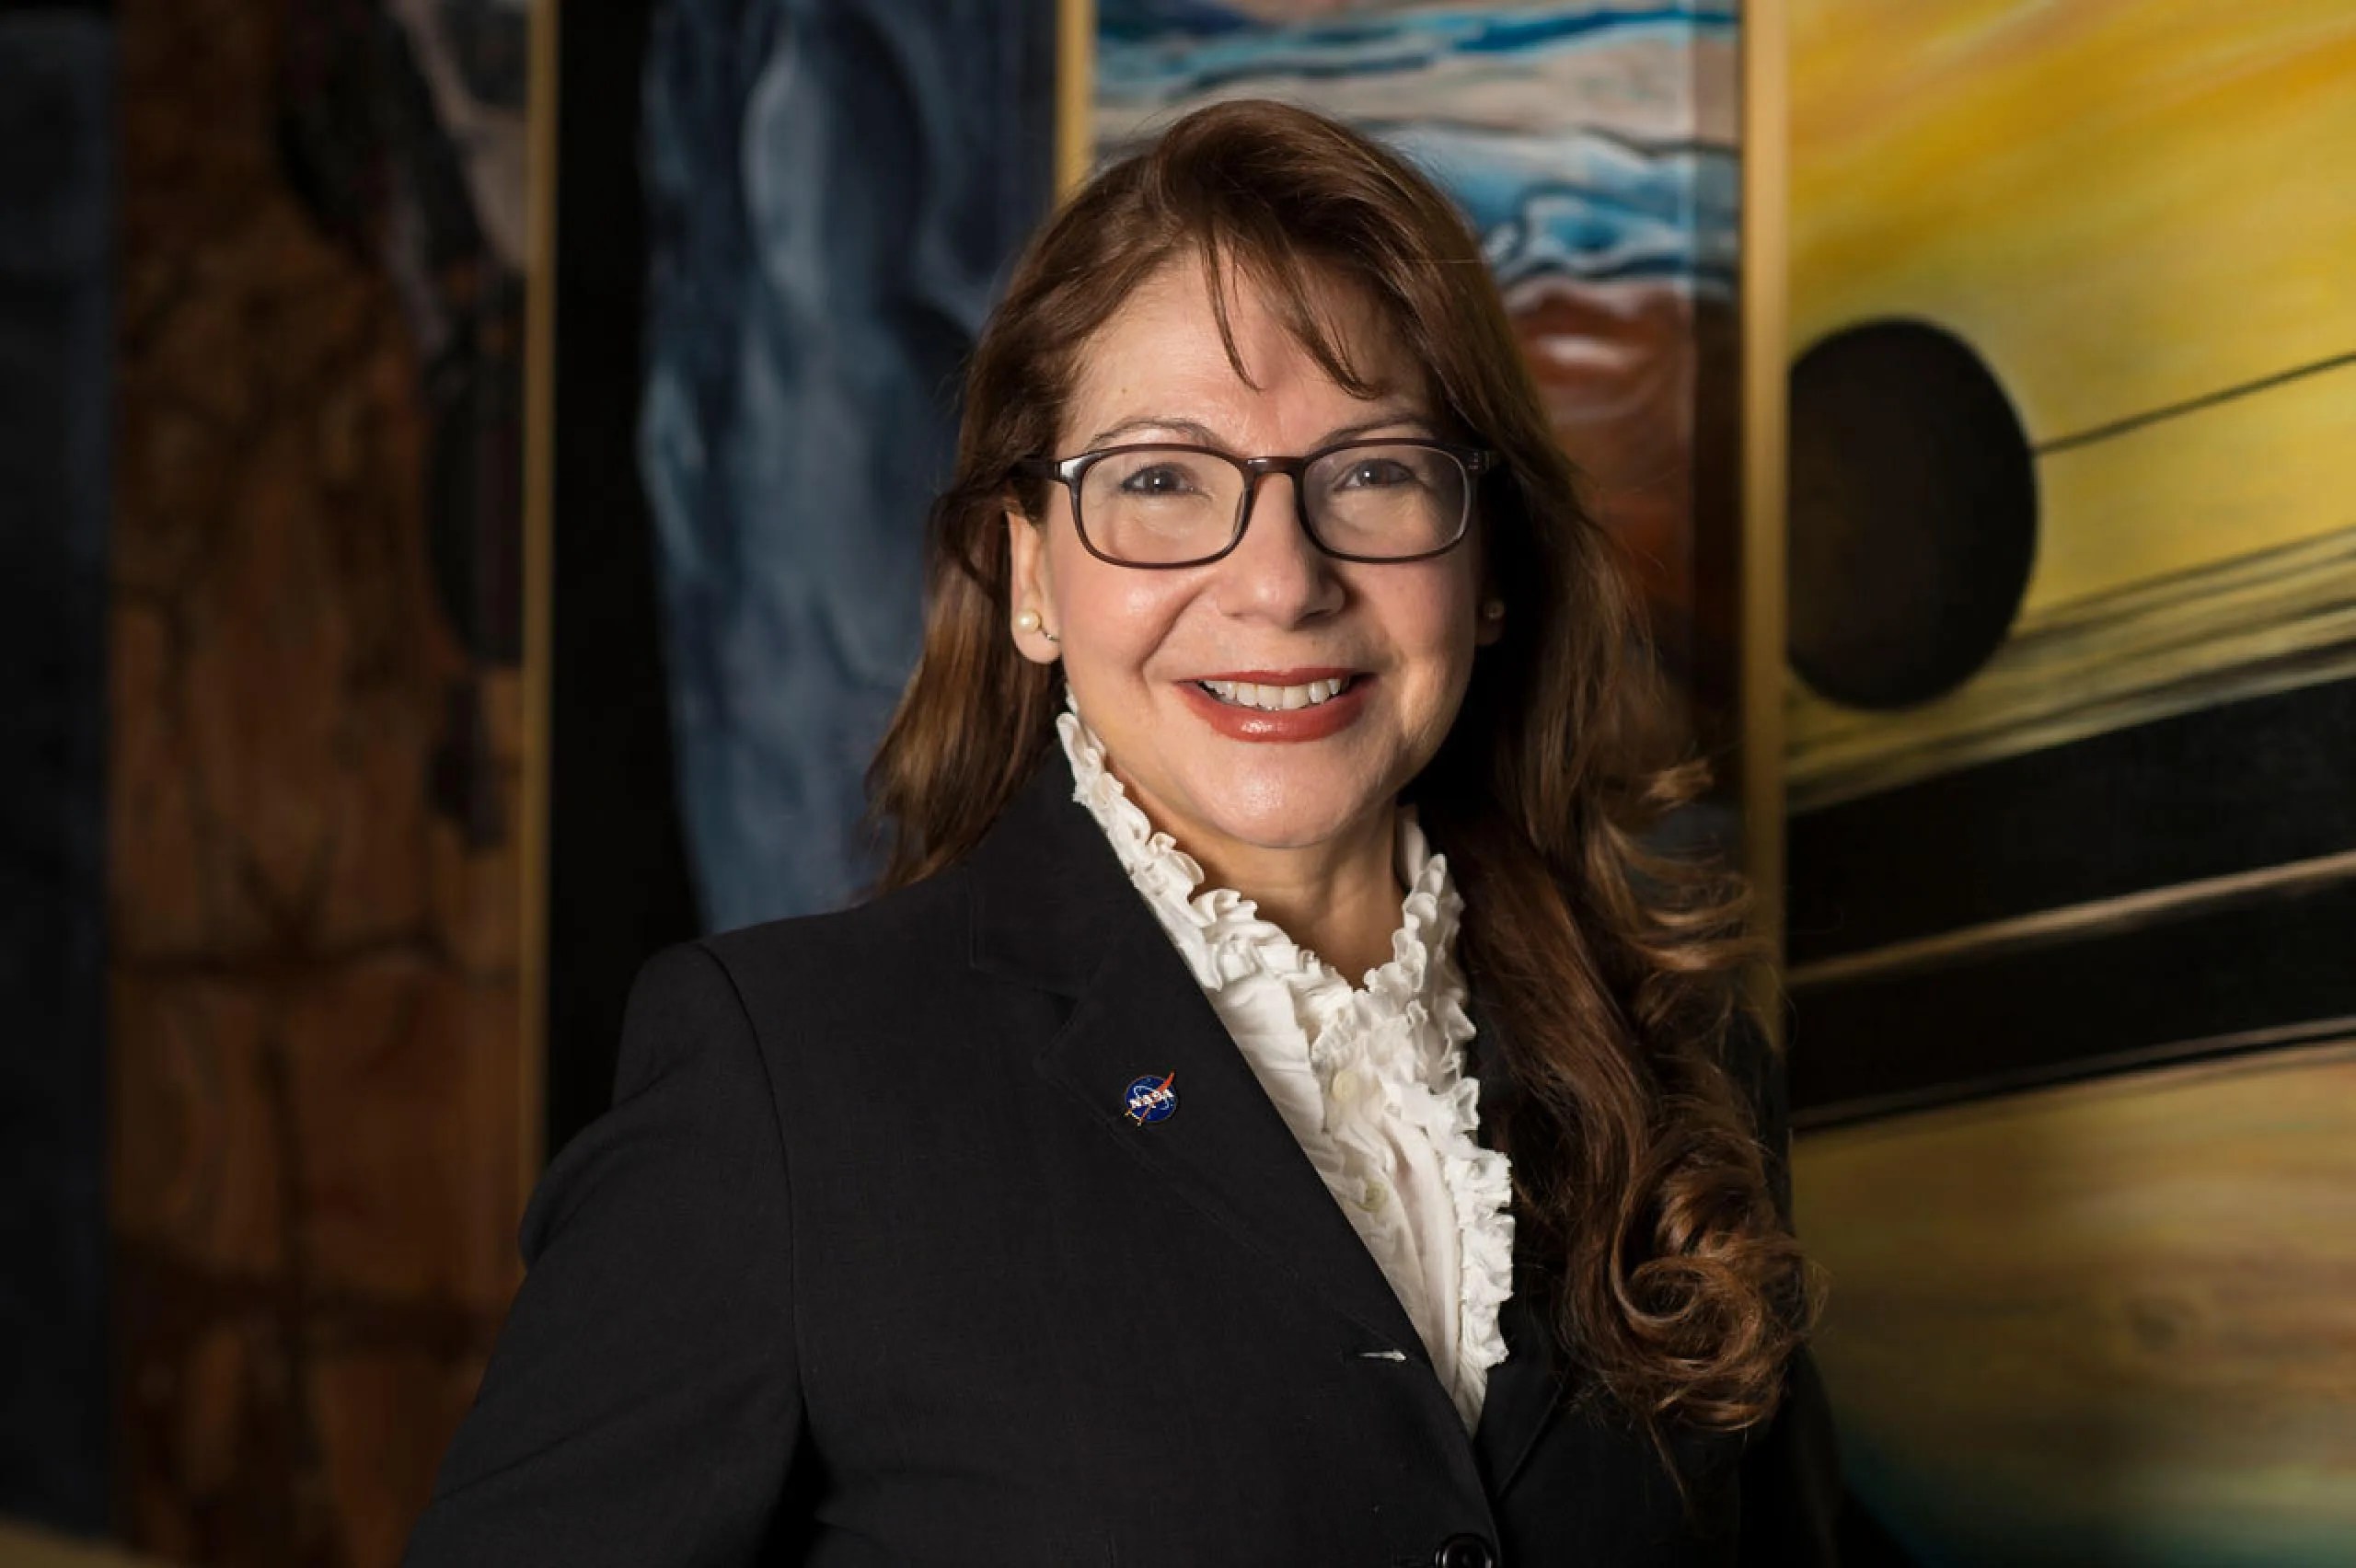 La doctora Adriana C. Ocampo Uría comenzó su travesía en la NASA como voluntaria en el Centro de Propulsión a Chorro de la agencia (JPL, por sus siglas en inglés) en el sur de California antes de graduarse de la escuela secundaria. Créditos: NASA